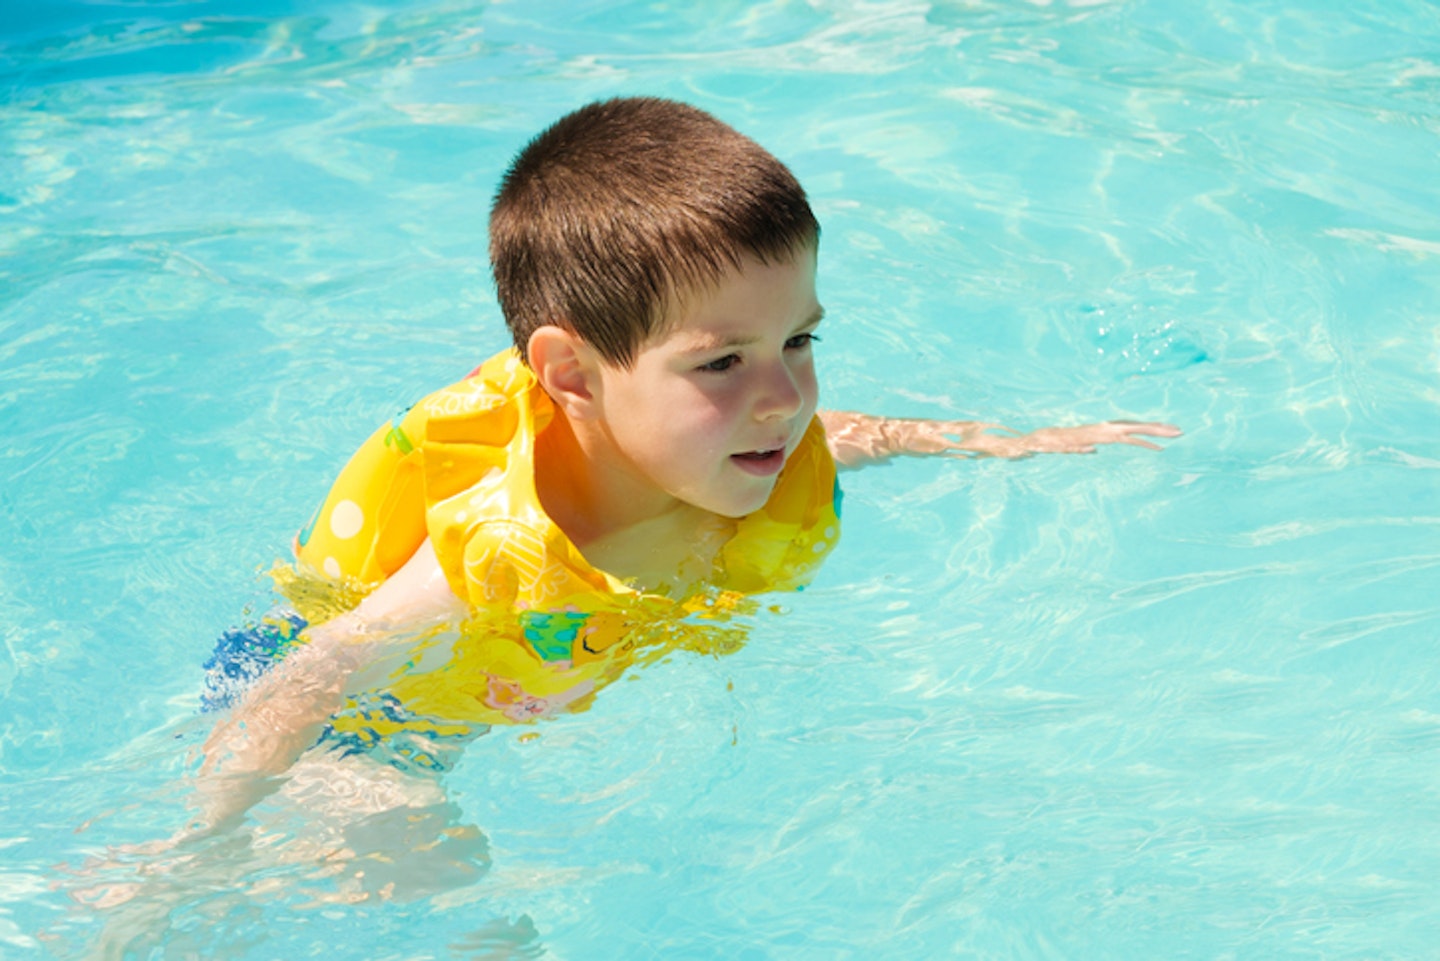 Little boy wearing swim vest